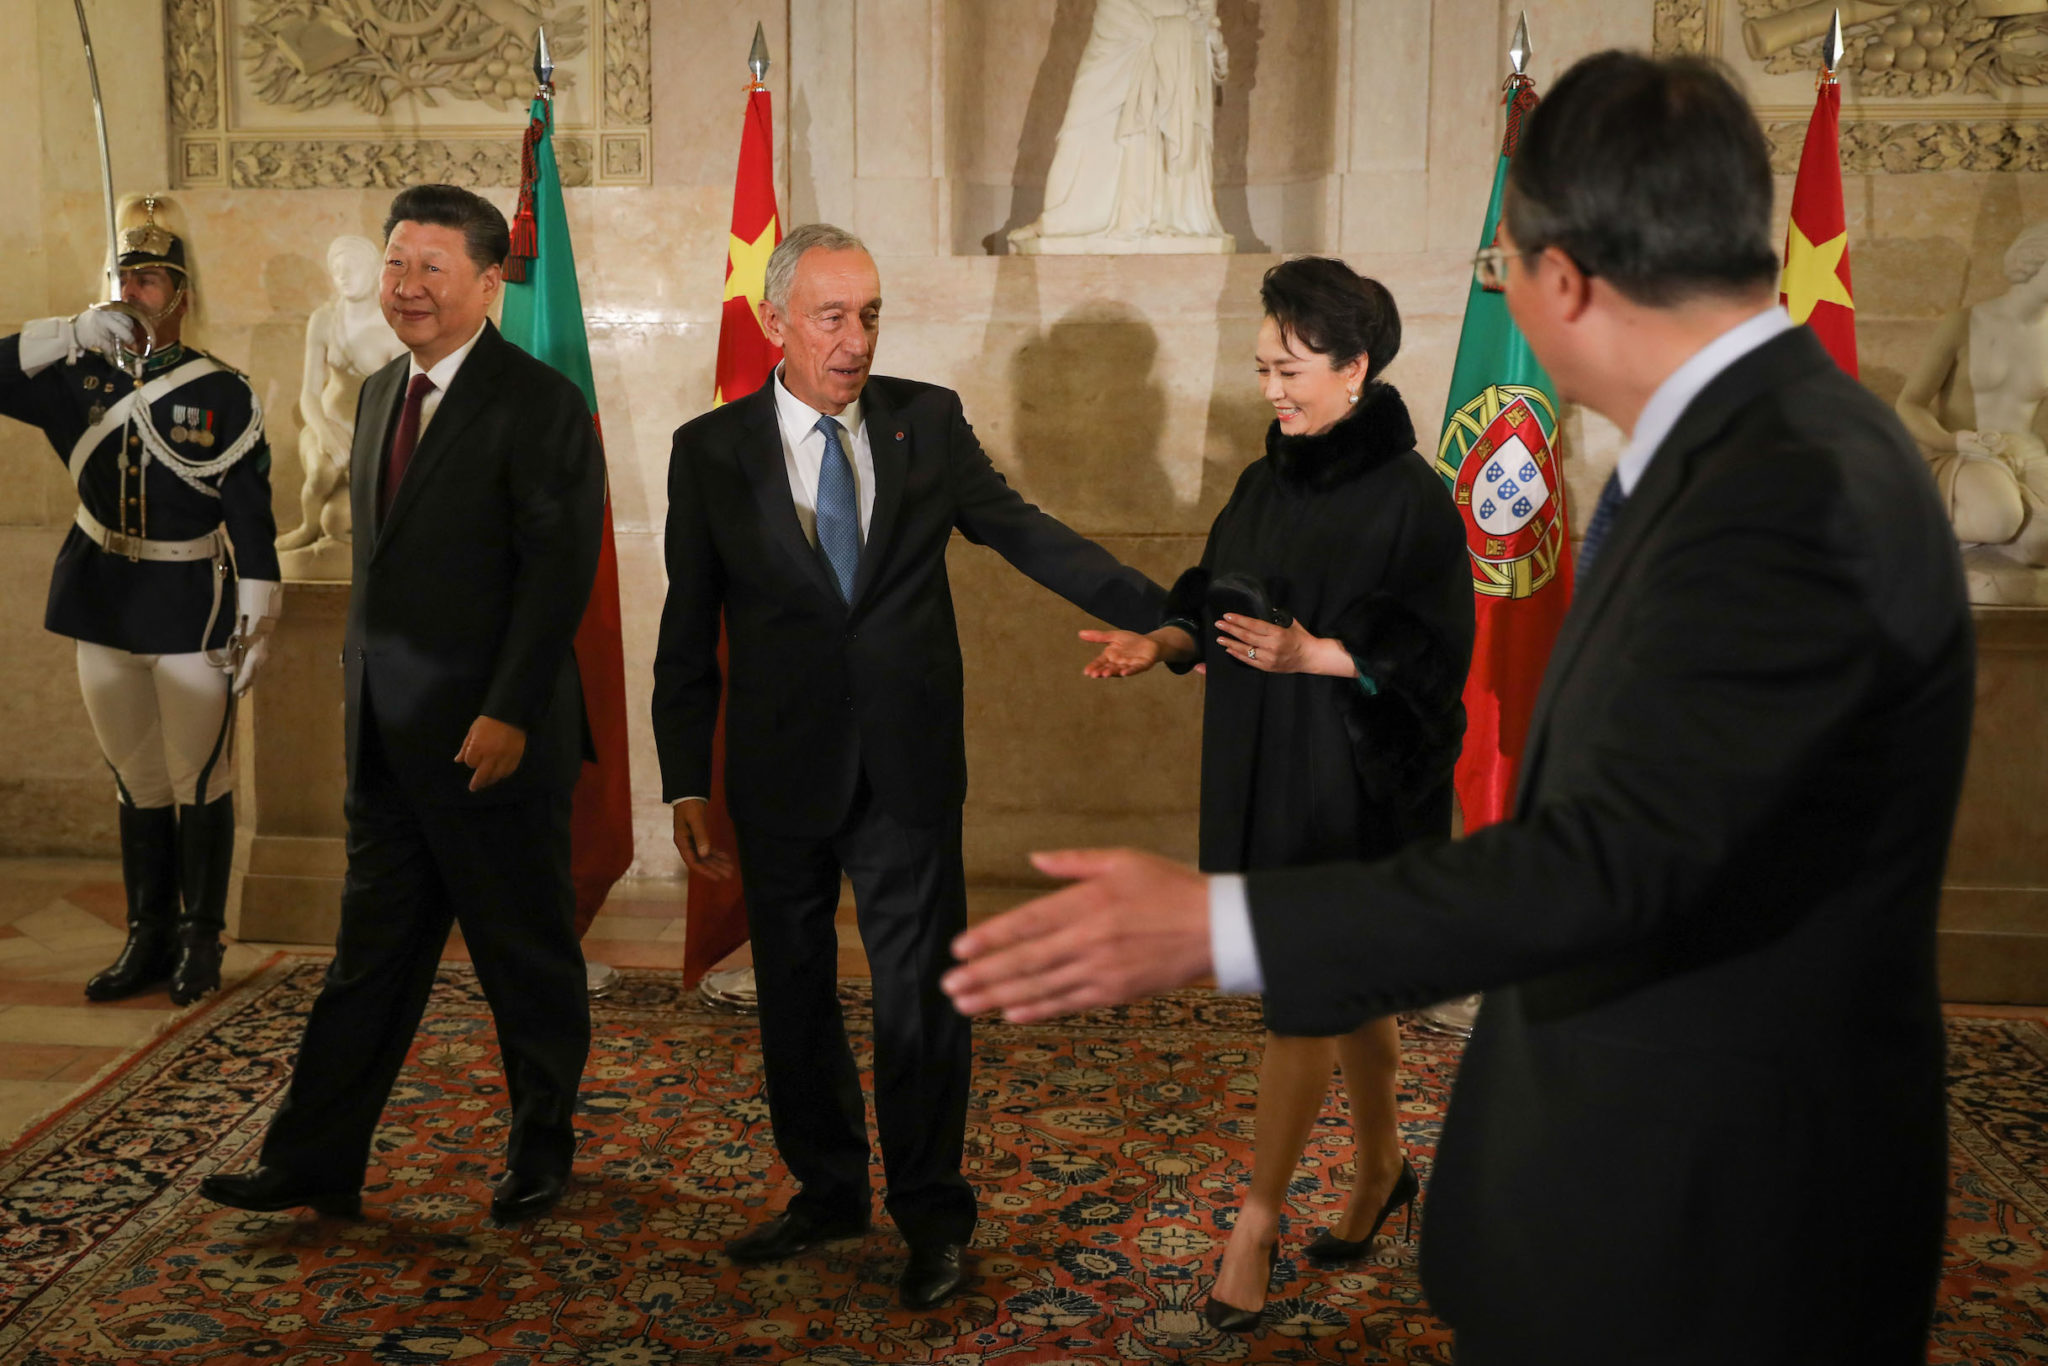 Xi Jinping em Portugal | PR chinês sublinha “pontos de convergência e interesses comuns”